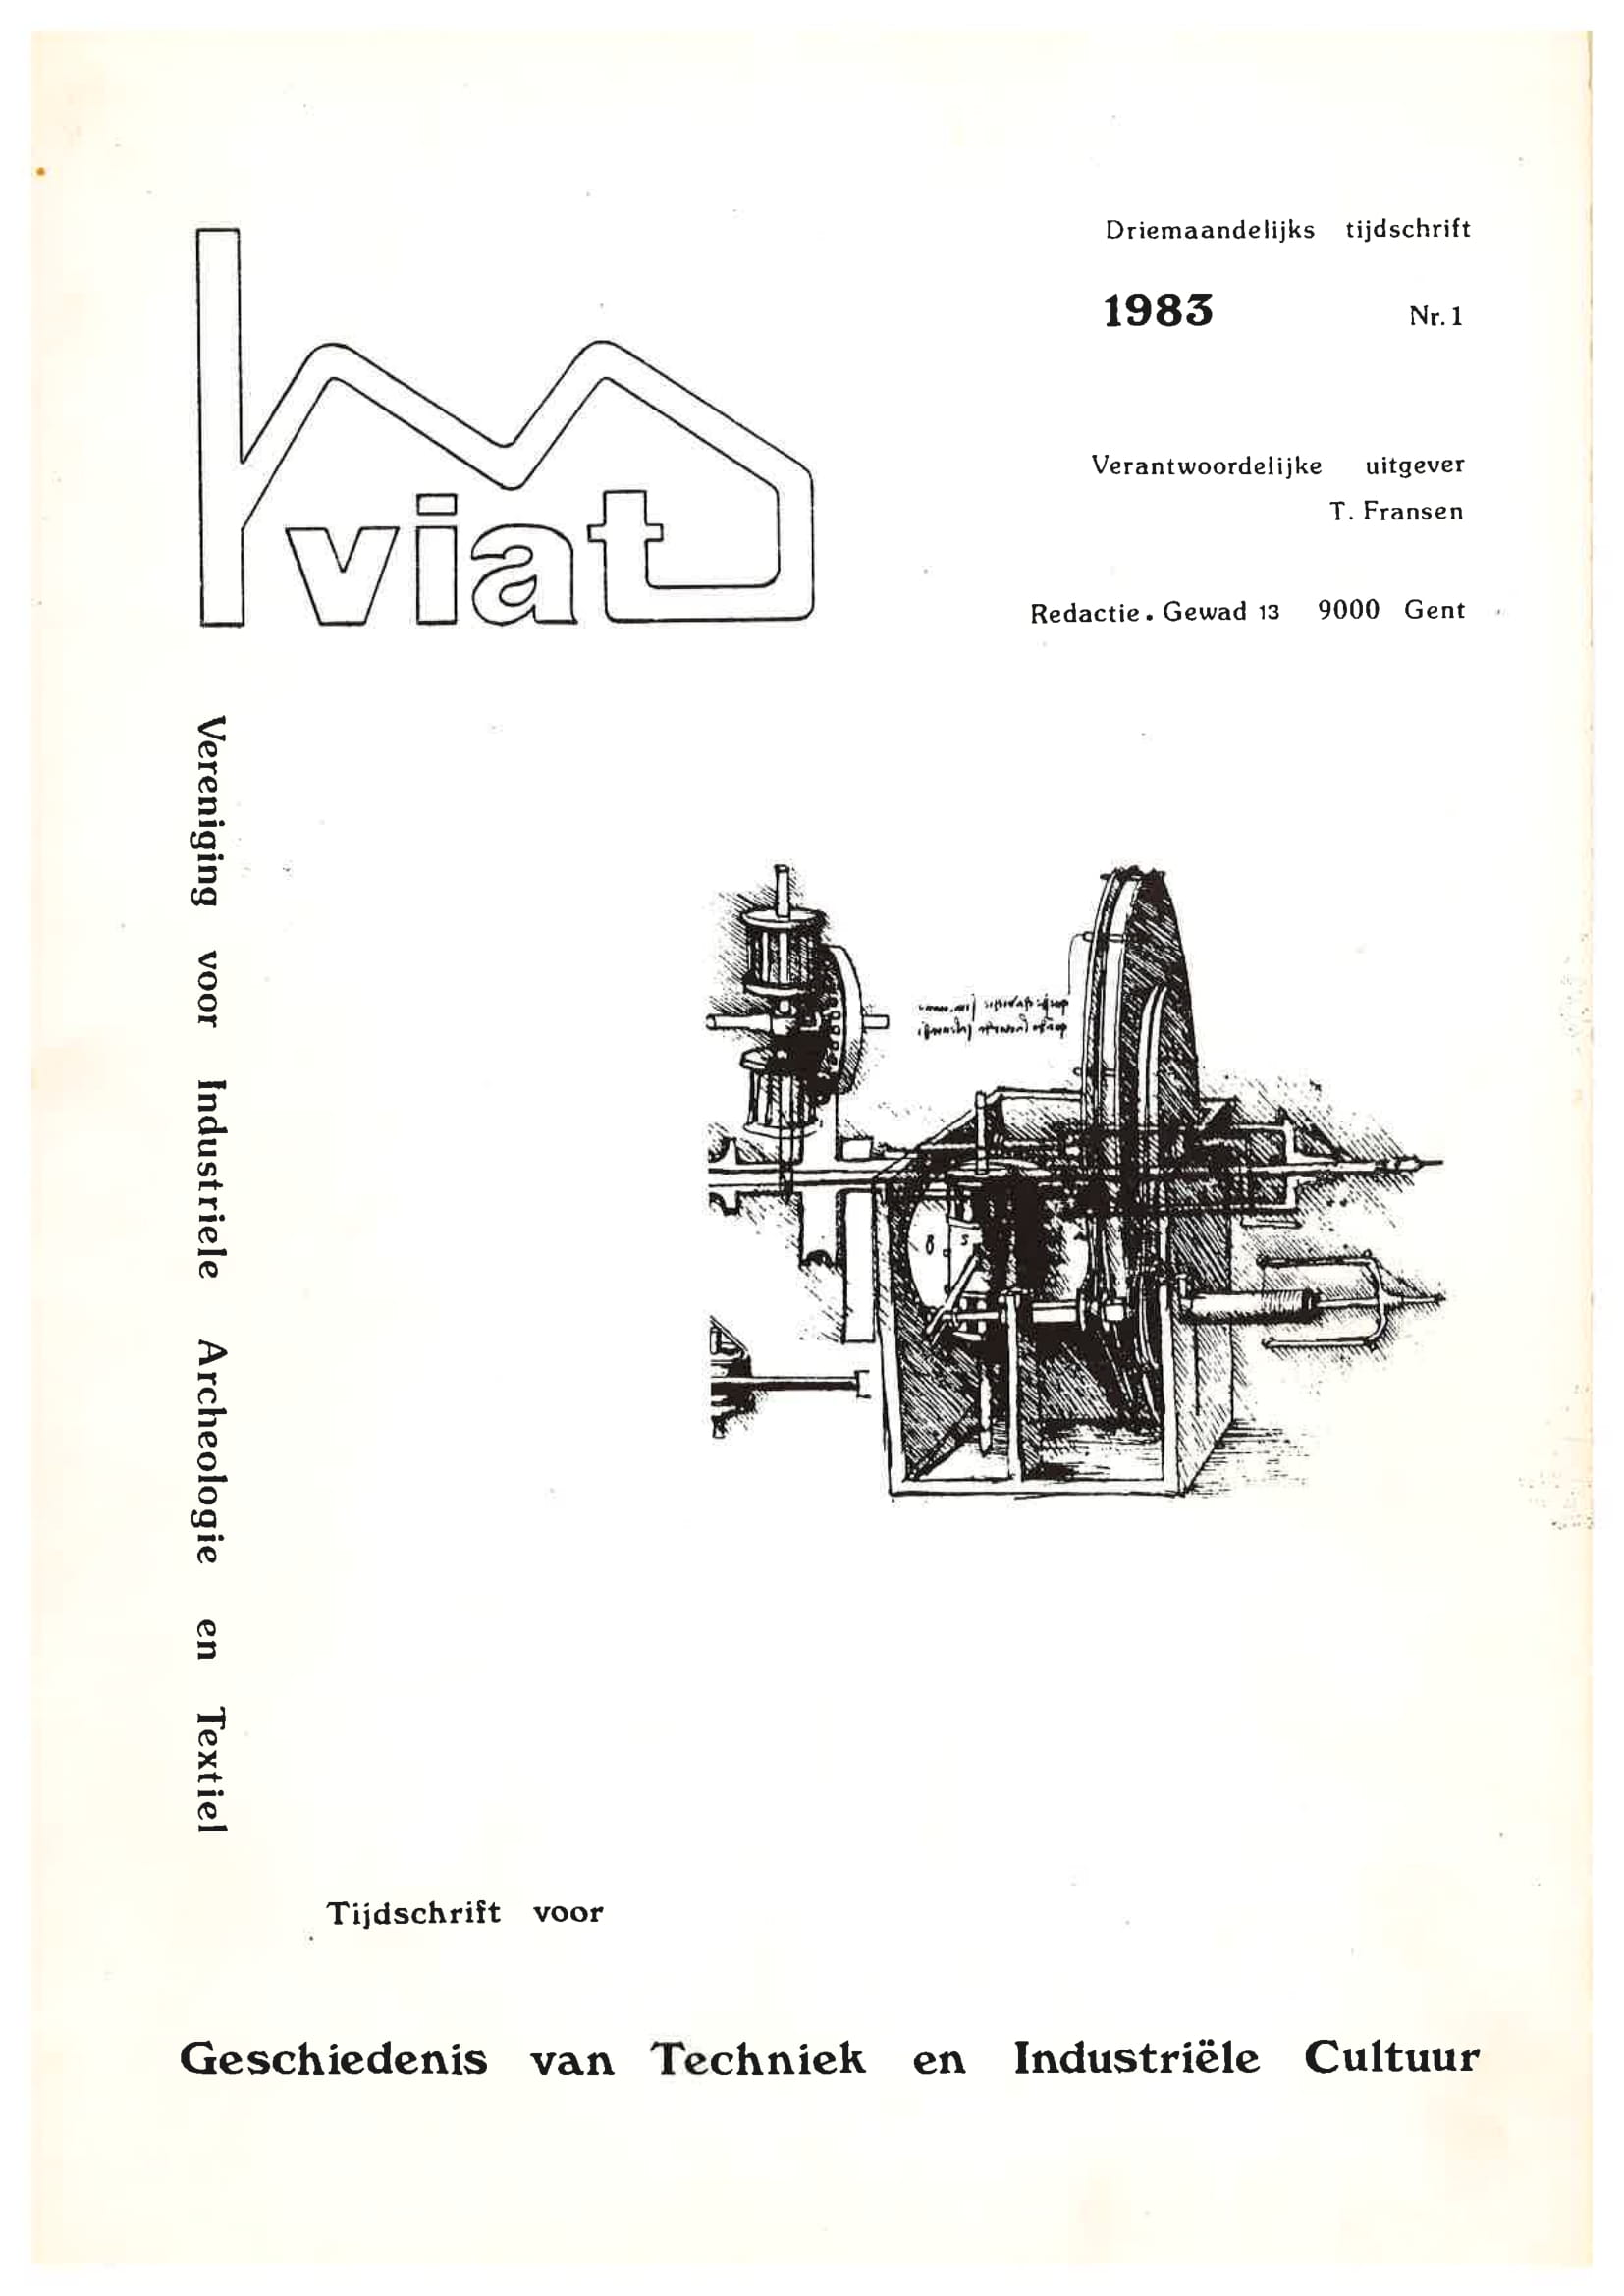 Volume 1 • Issue 1 • 1983